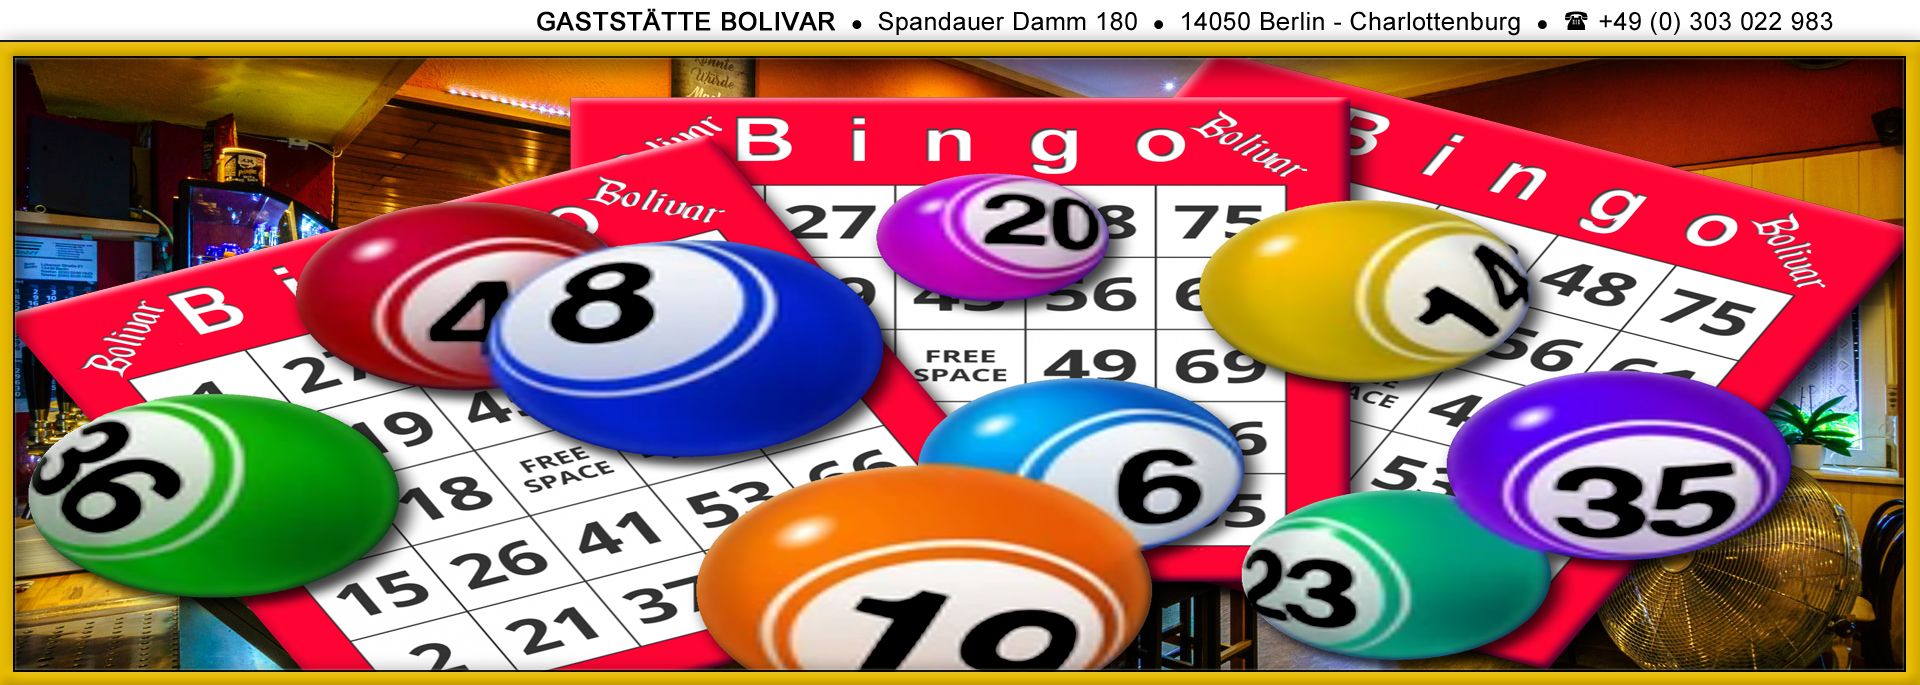 Bingo jeden 1. Freitag im Monat - Spiel, Spaß und Spannung